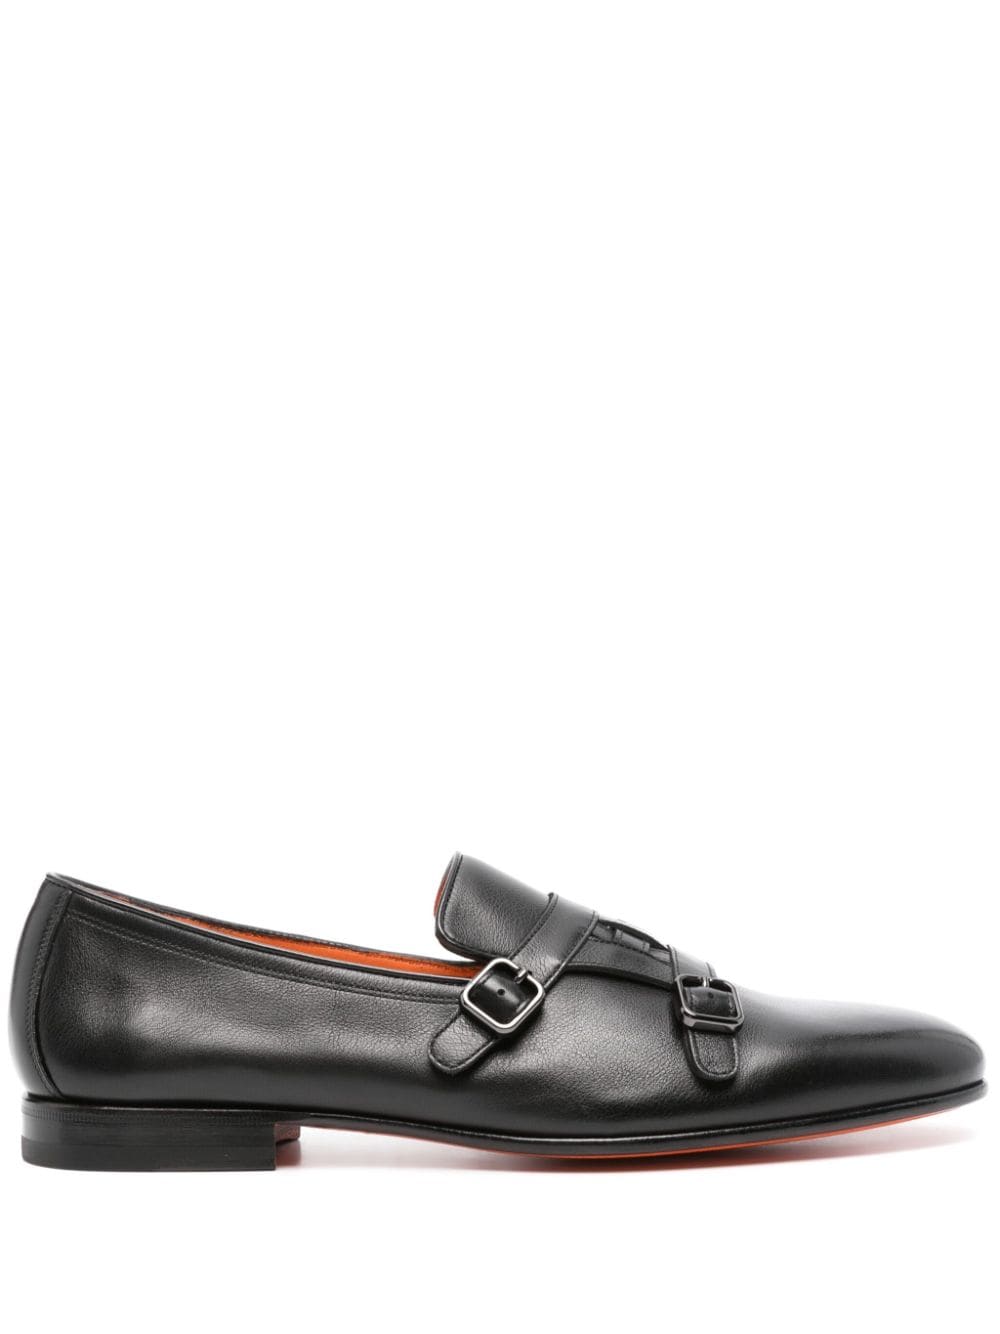 Santoni double-strap leather monk shoes - Black von Santoni